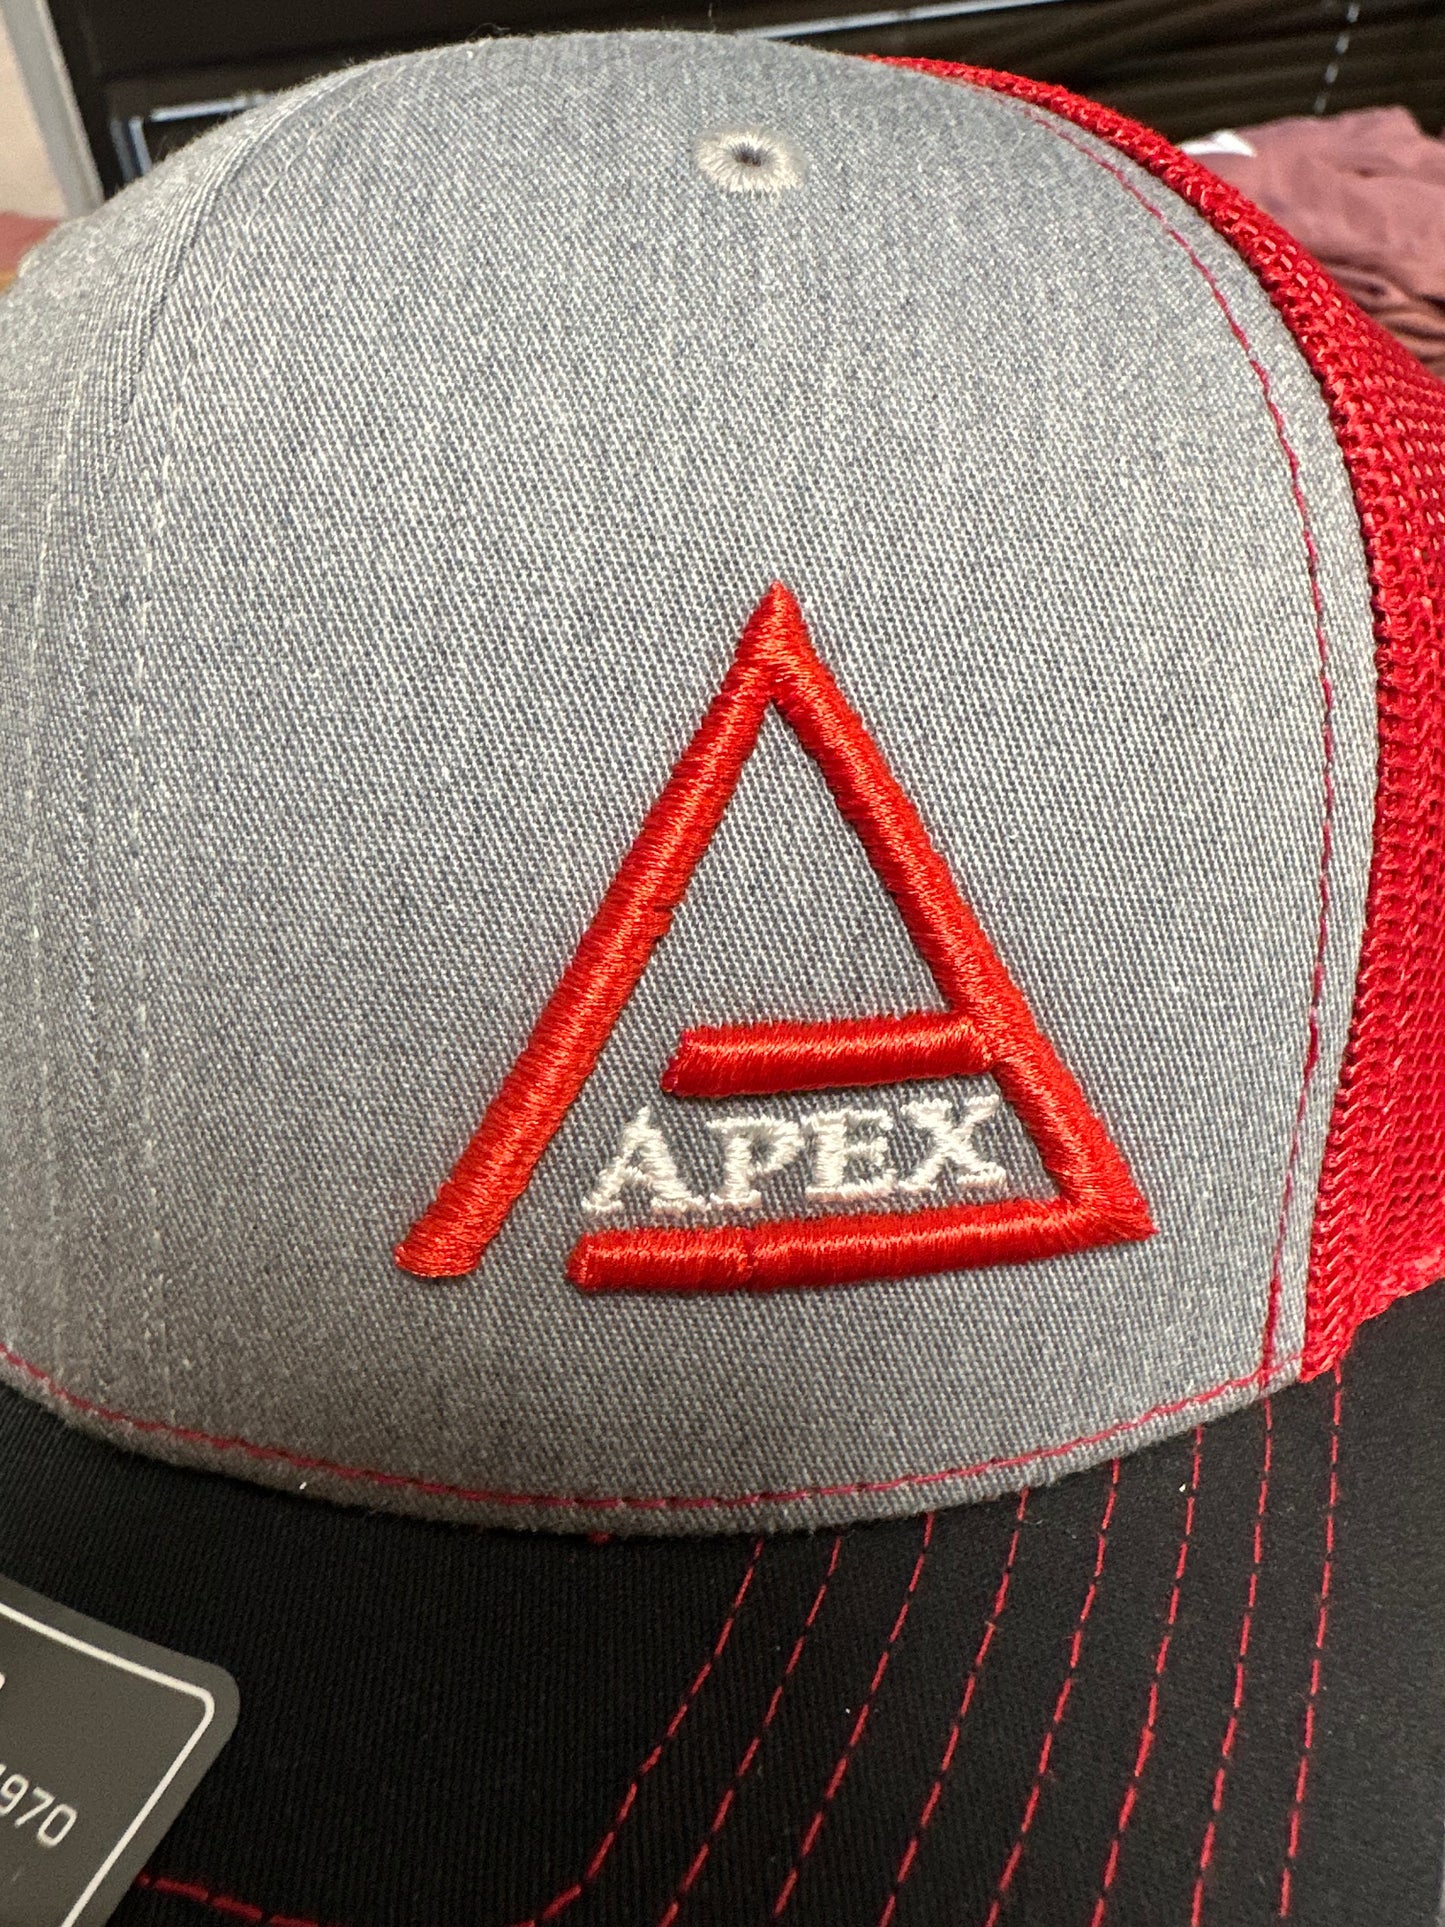 Apex Grey & Red Trucker Hat